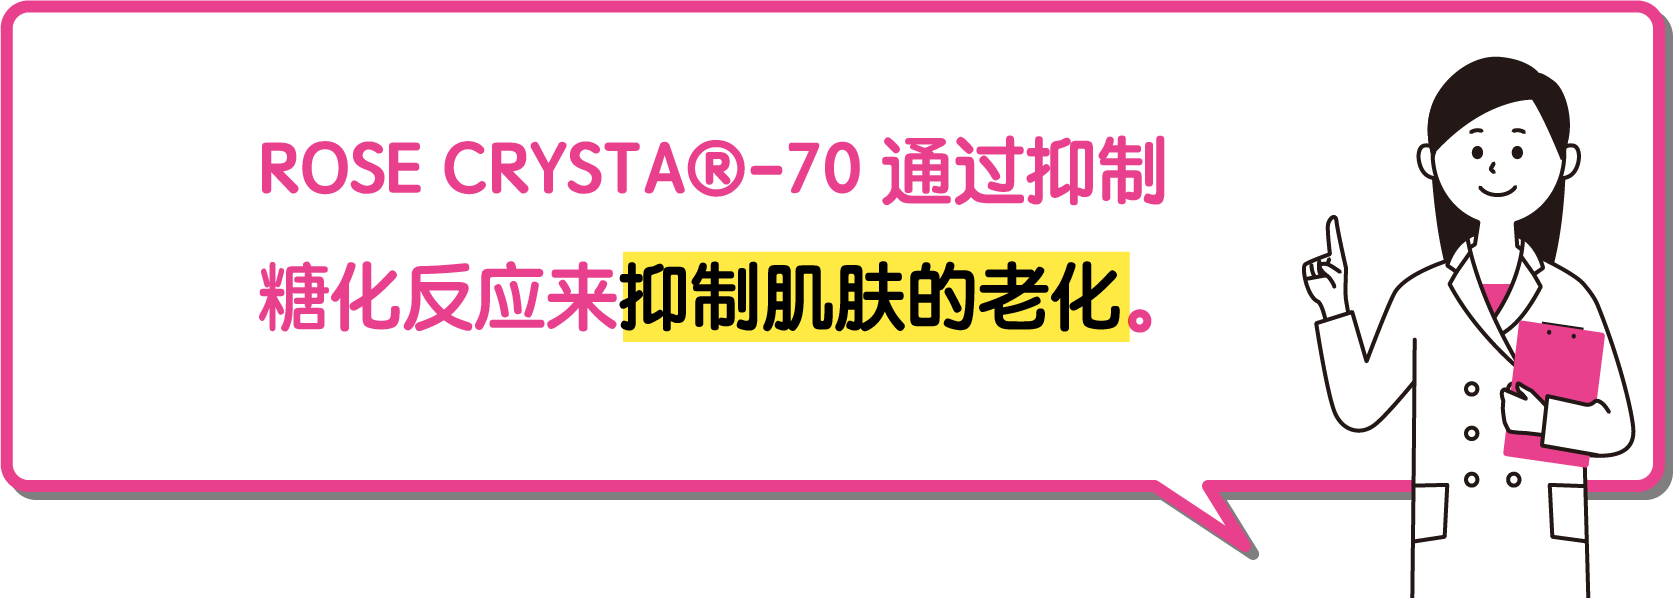 ROSE CRYSTA-70通过抑制糖化反应来抑制肌肤的老化。